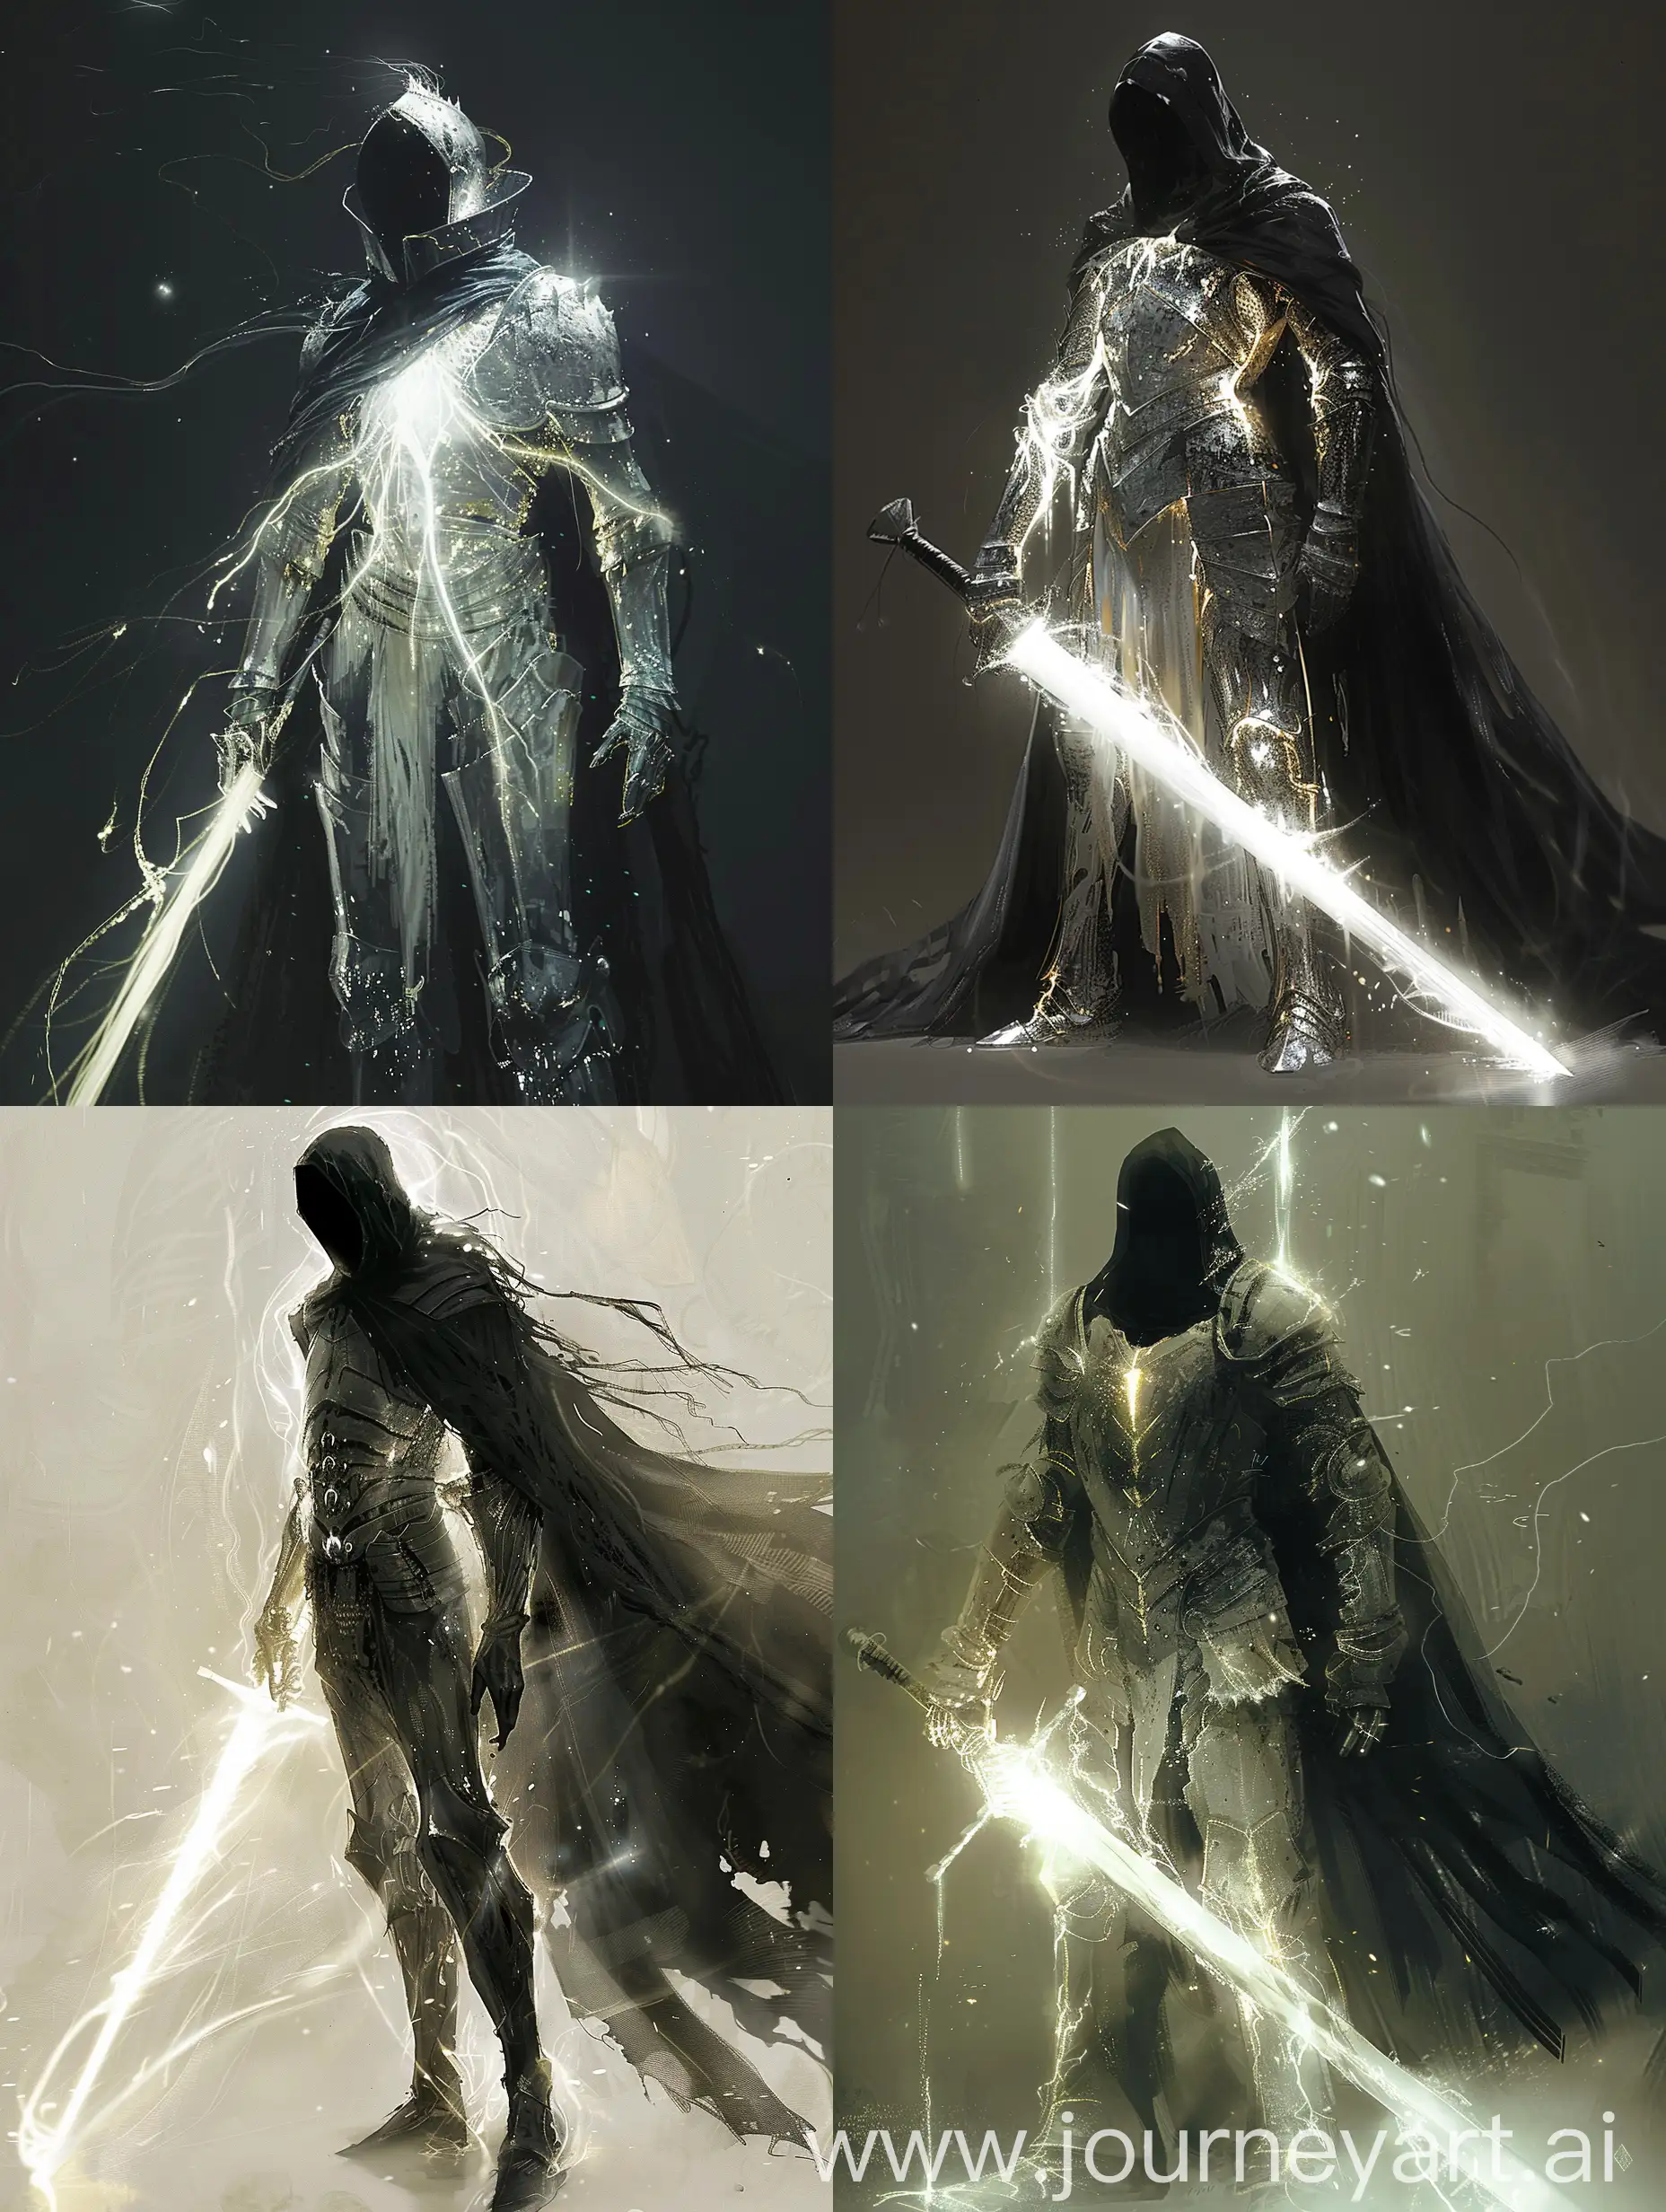 Radiant-Knight-in-Dark-Fantasy-Armor-Holding-Sword-of-Pure-Light